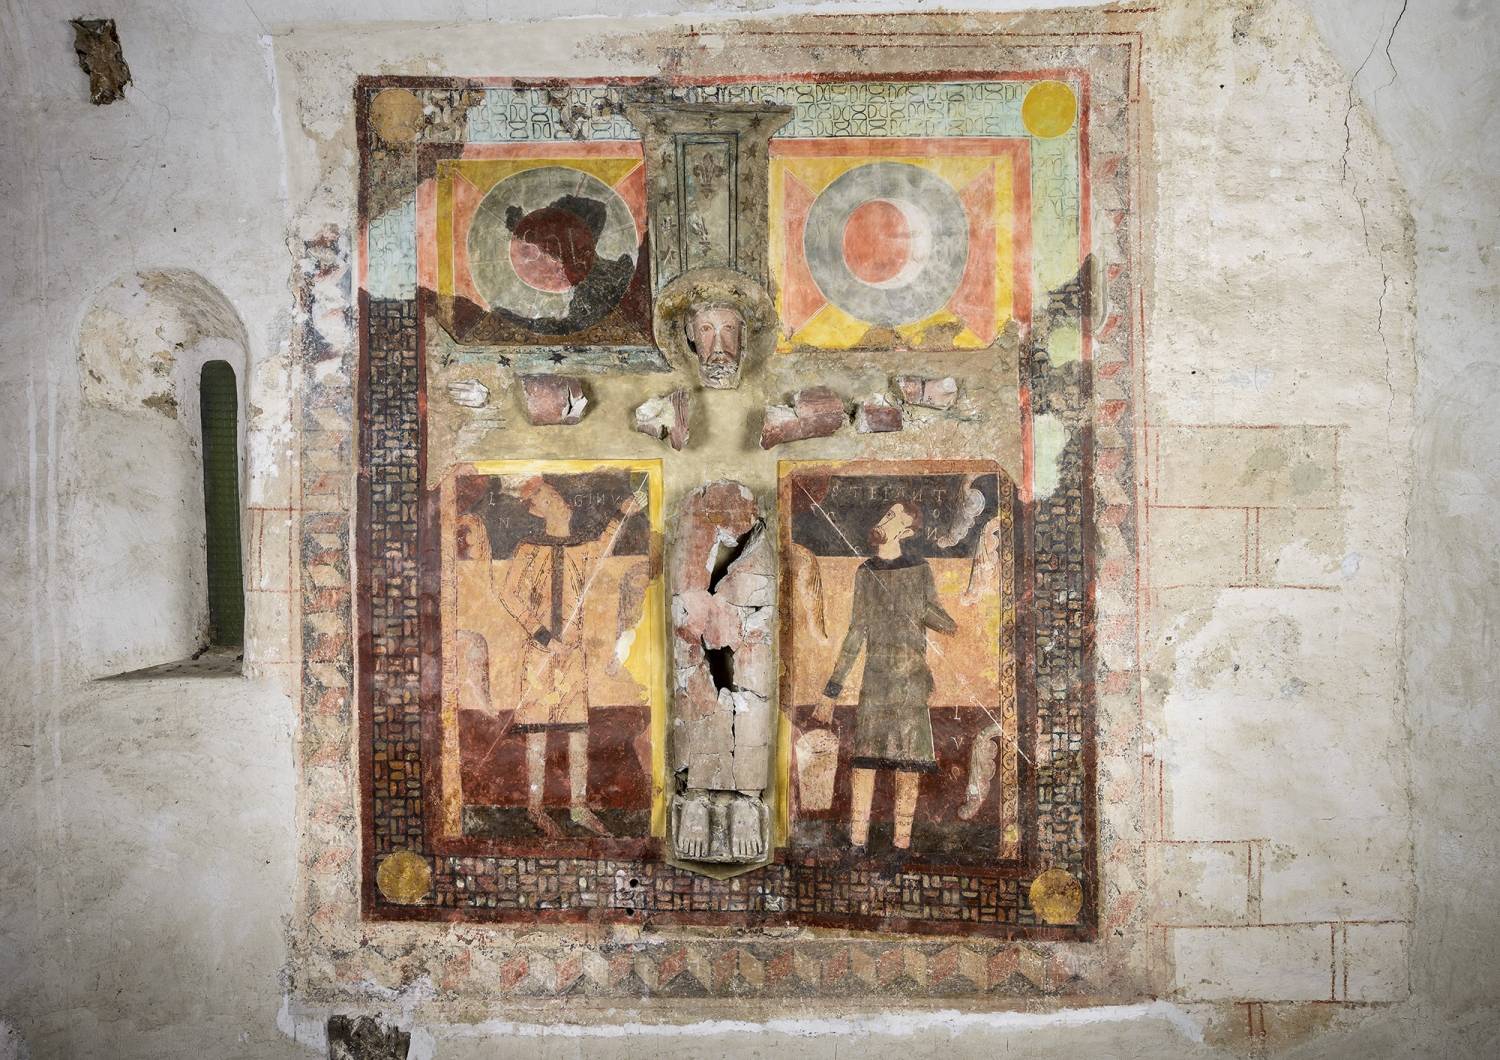 Majestat romànica d'estuc del segle XII envoltada d’una escena pictòrica mural que representa la crucifixió amb Longinos i Stefanon acompanyats del Sol i la Lluna. 